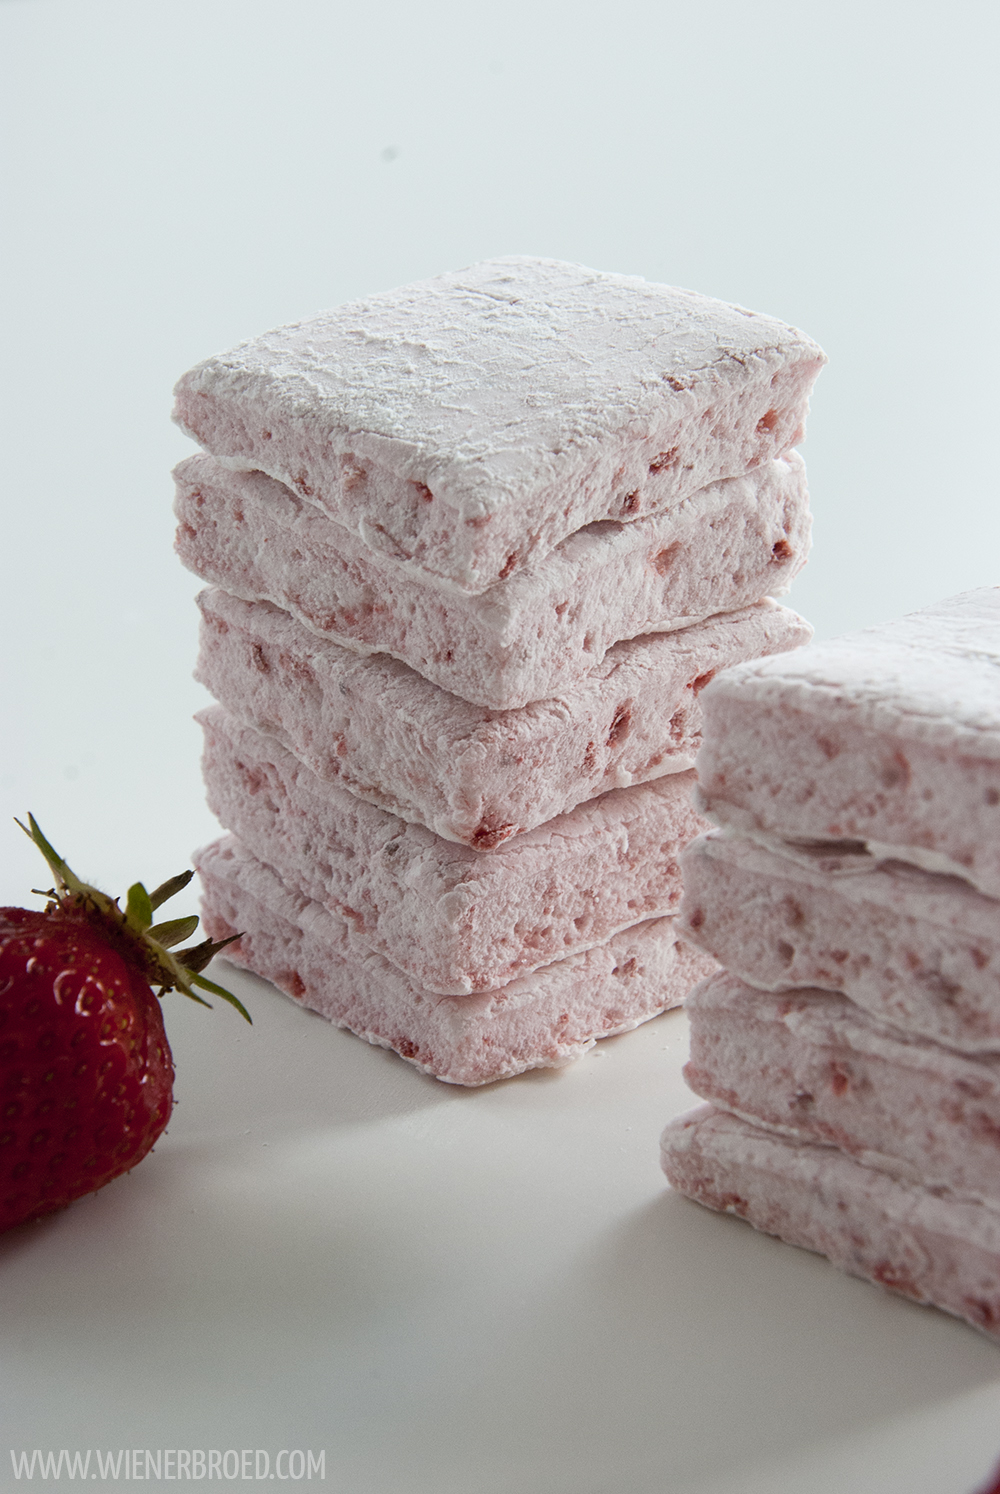 Erdbeer-Marshmallows - Rezept für erdbeerigste Marshmallows, das das ganze Jahr machbar ist [wienerbroed.com] Recipe for strawberry marshmallows, you can make them all year round